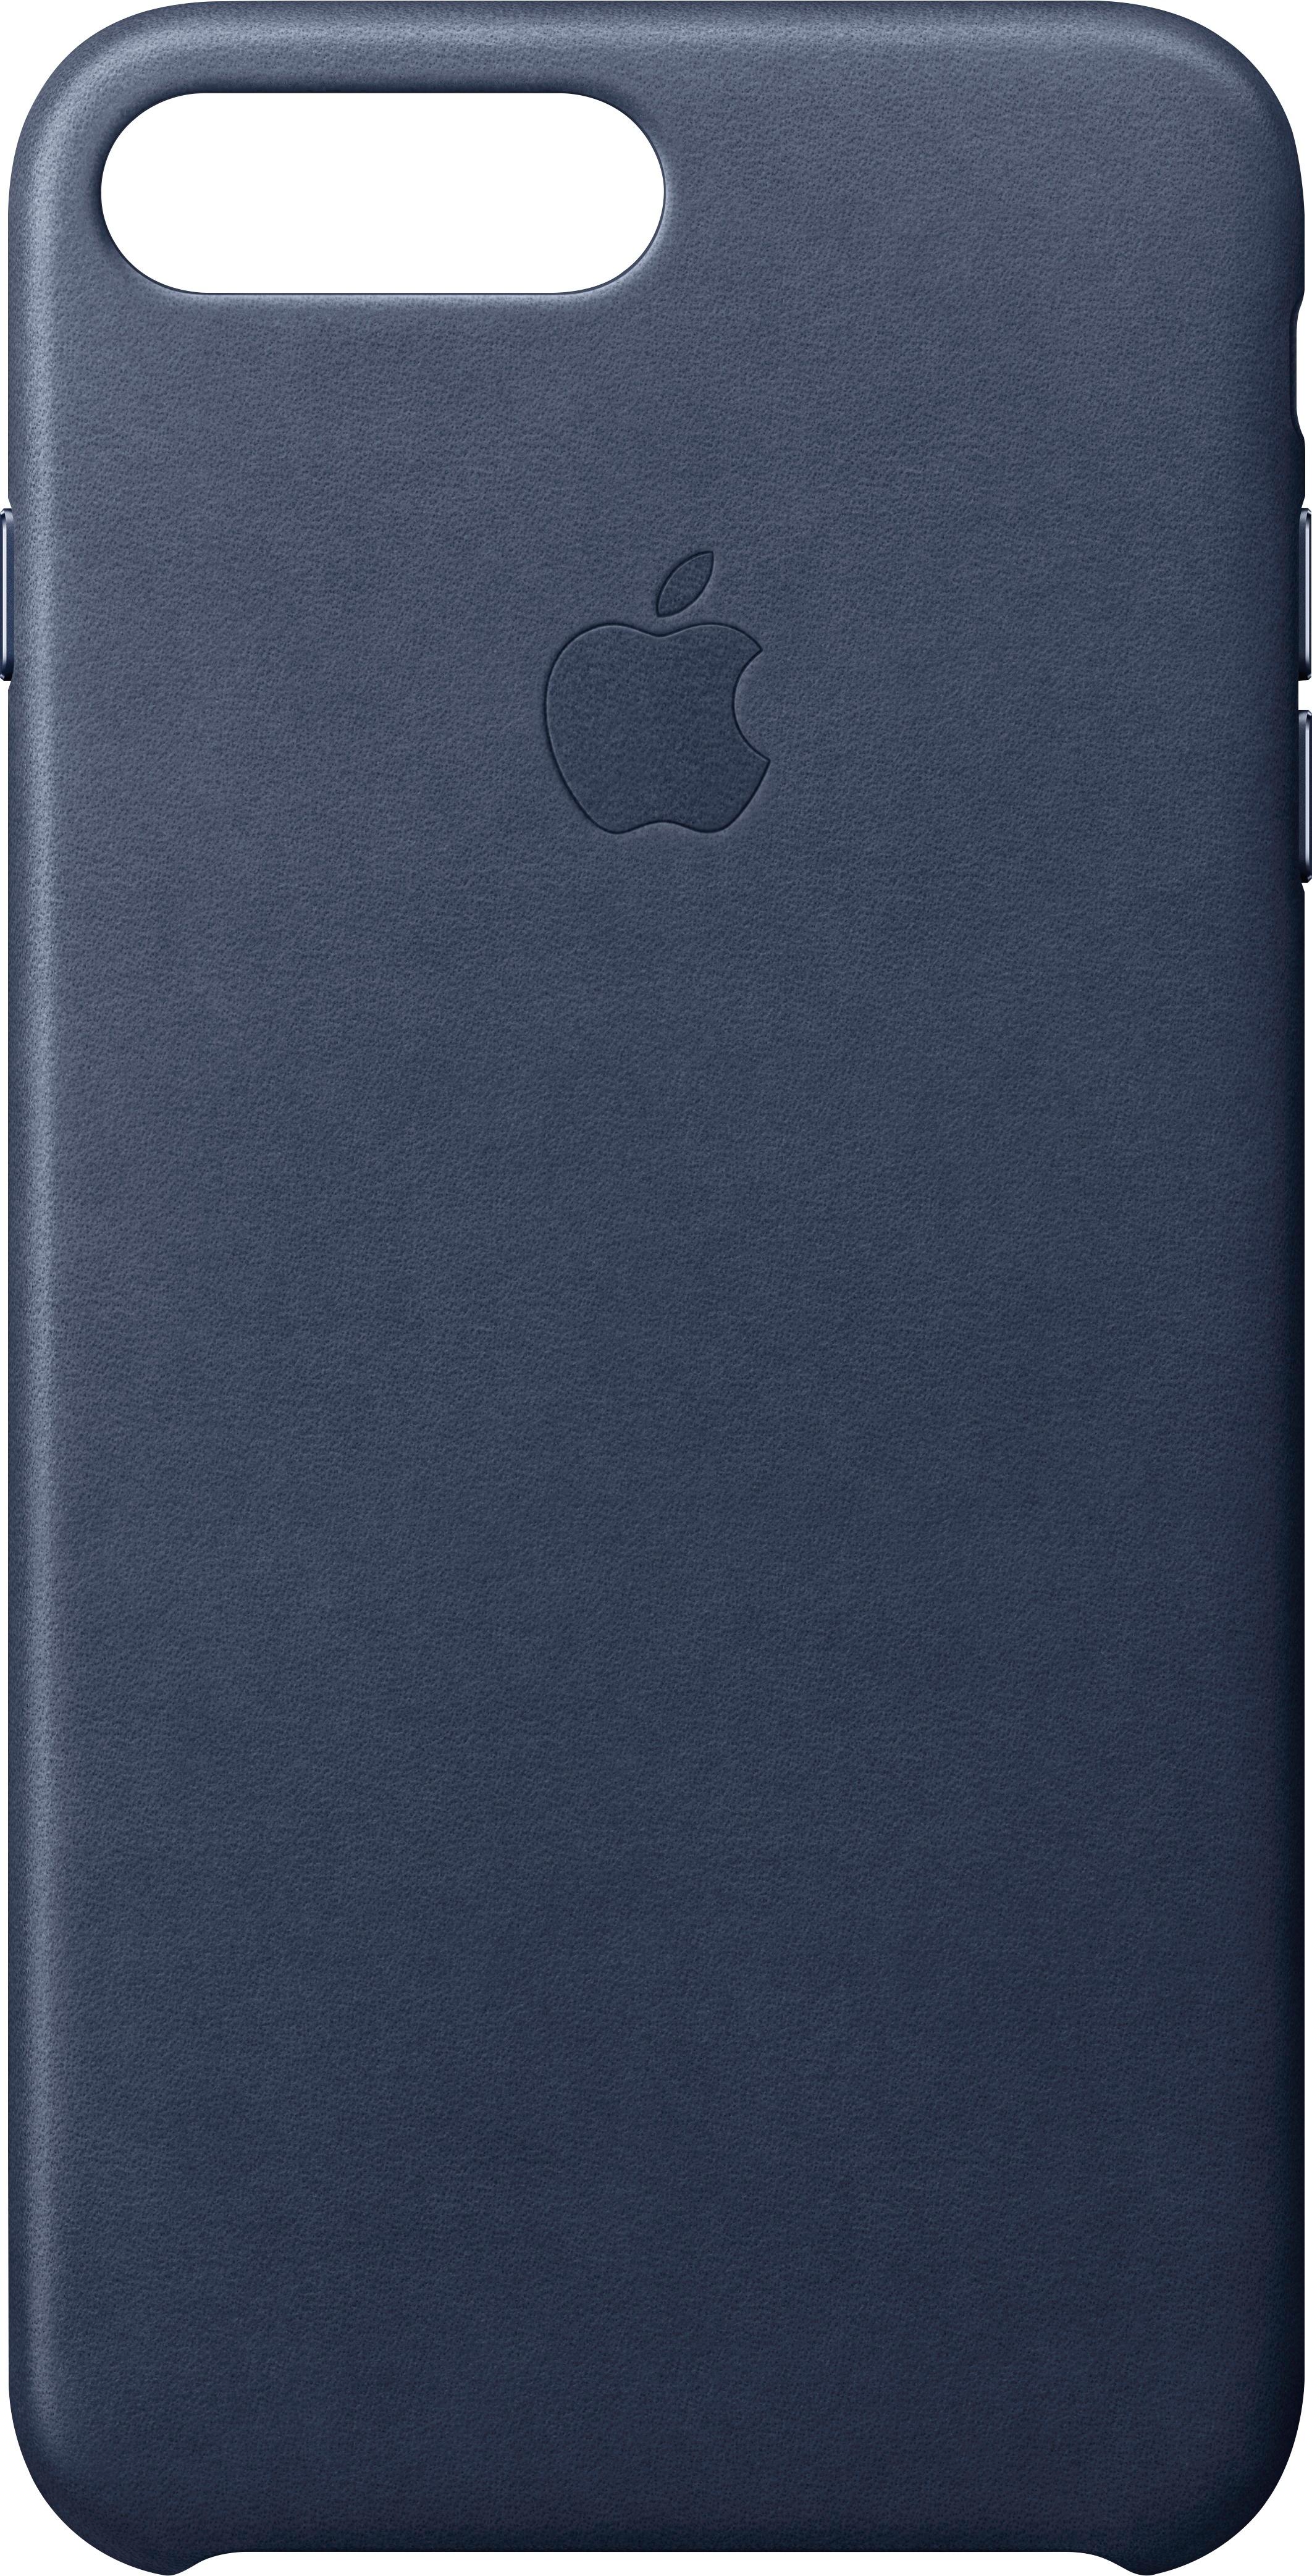 tyfoon Bereid Leesbaarheid Apple iPhone® 8 Plus/7 Plus Leather Case Midnight Blue MQHL2ZM/A - Best Buy